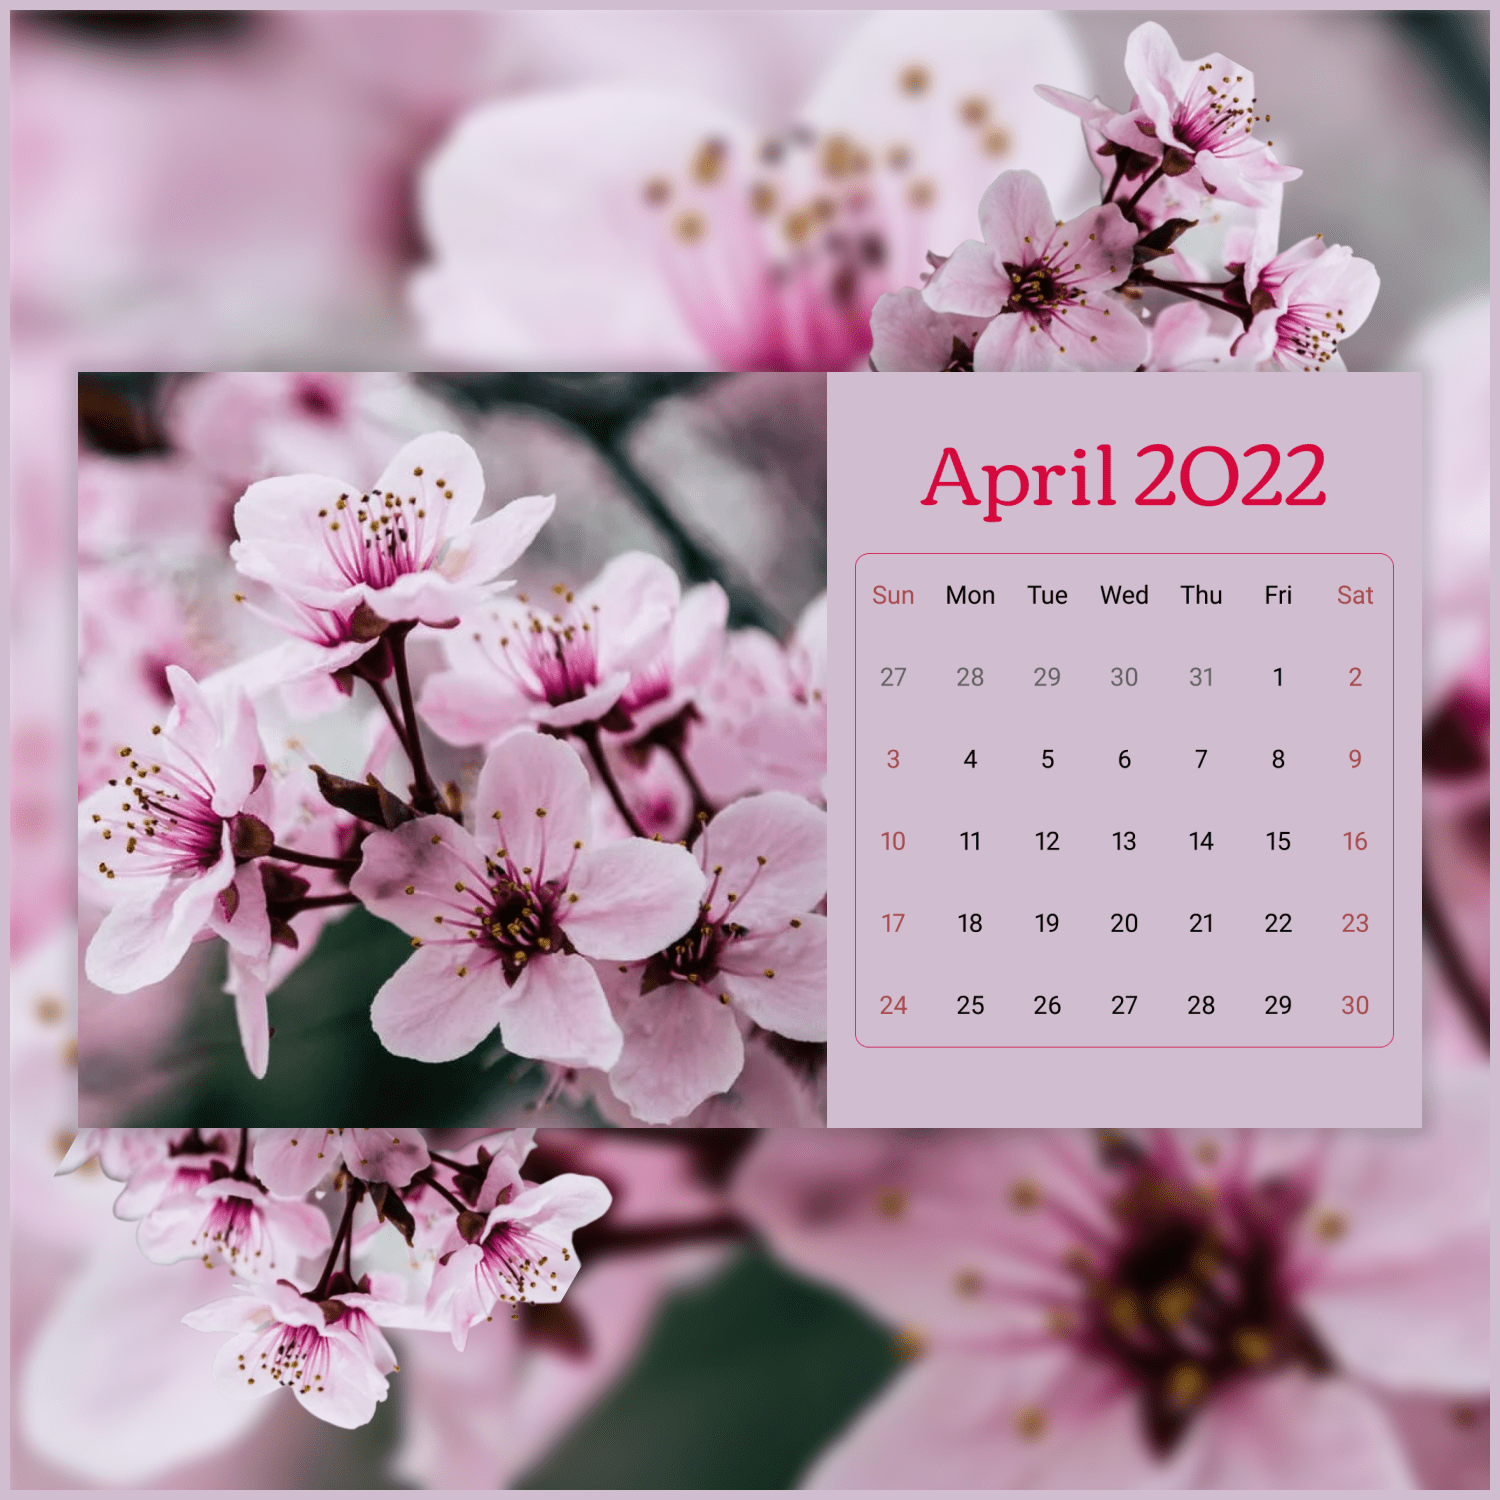 2 04 free printable april calendars 2022 1920x1080 1